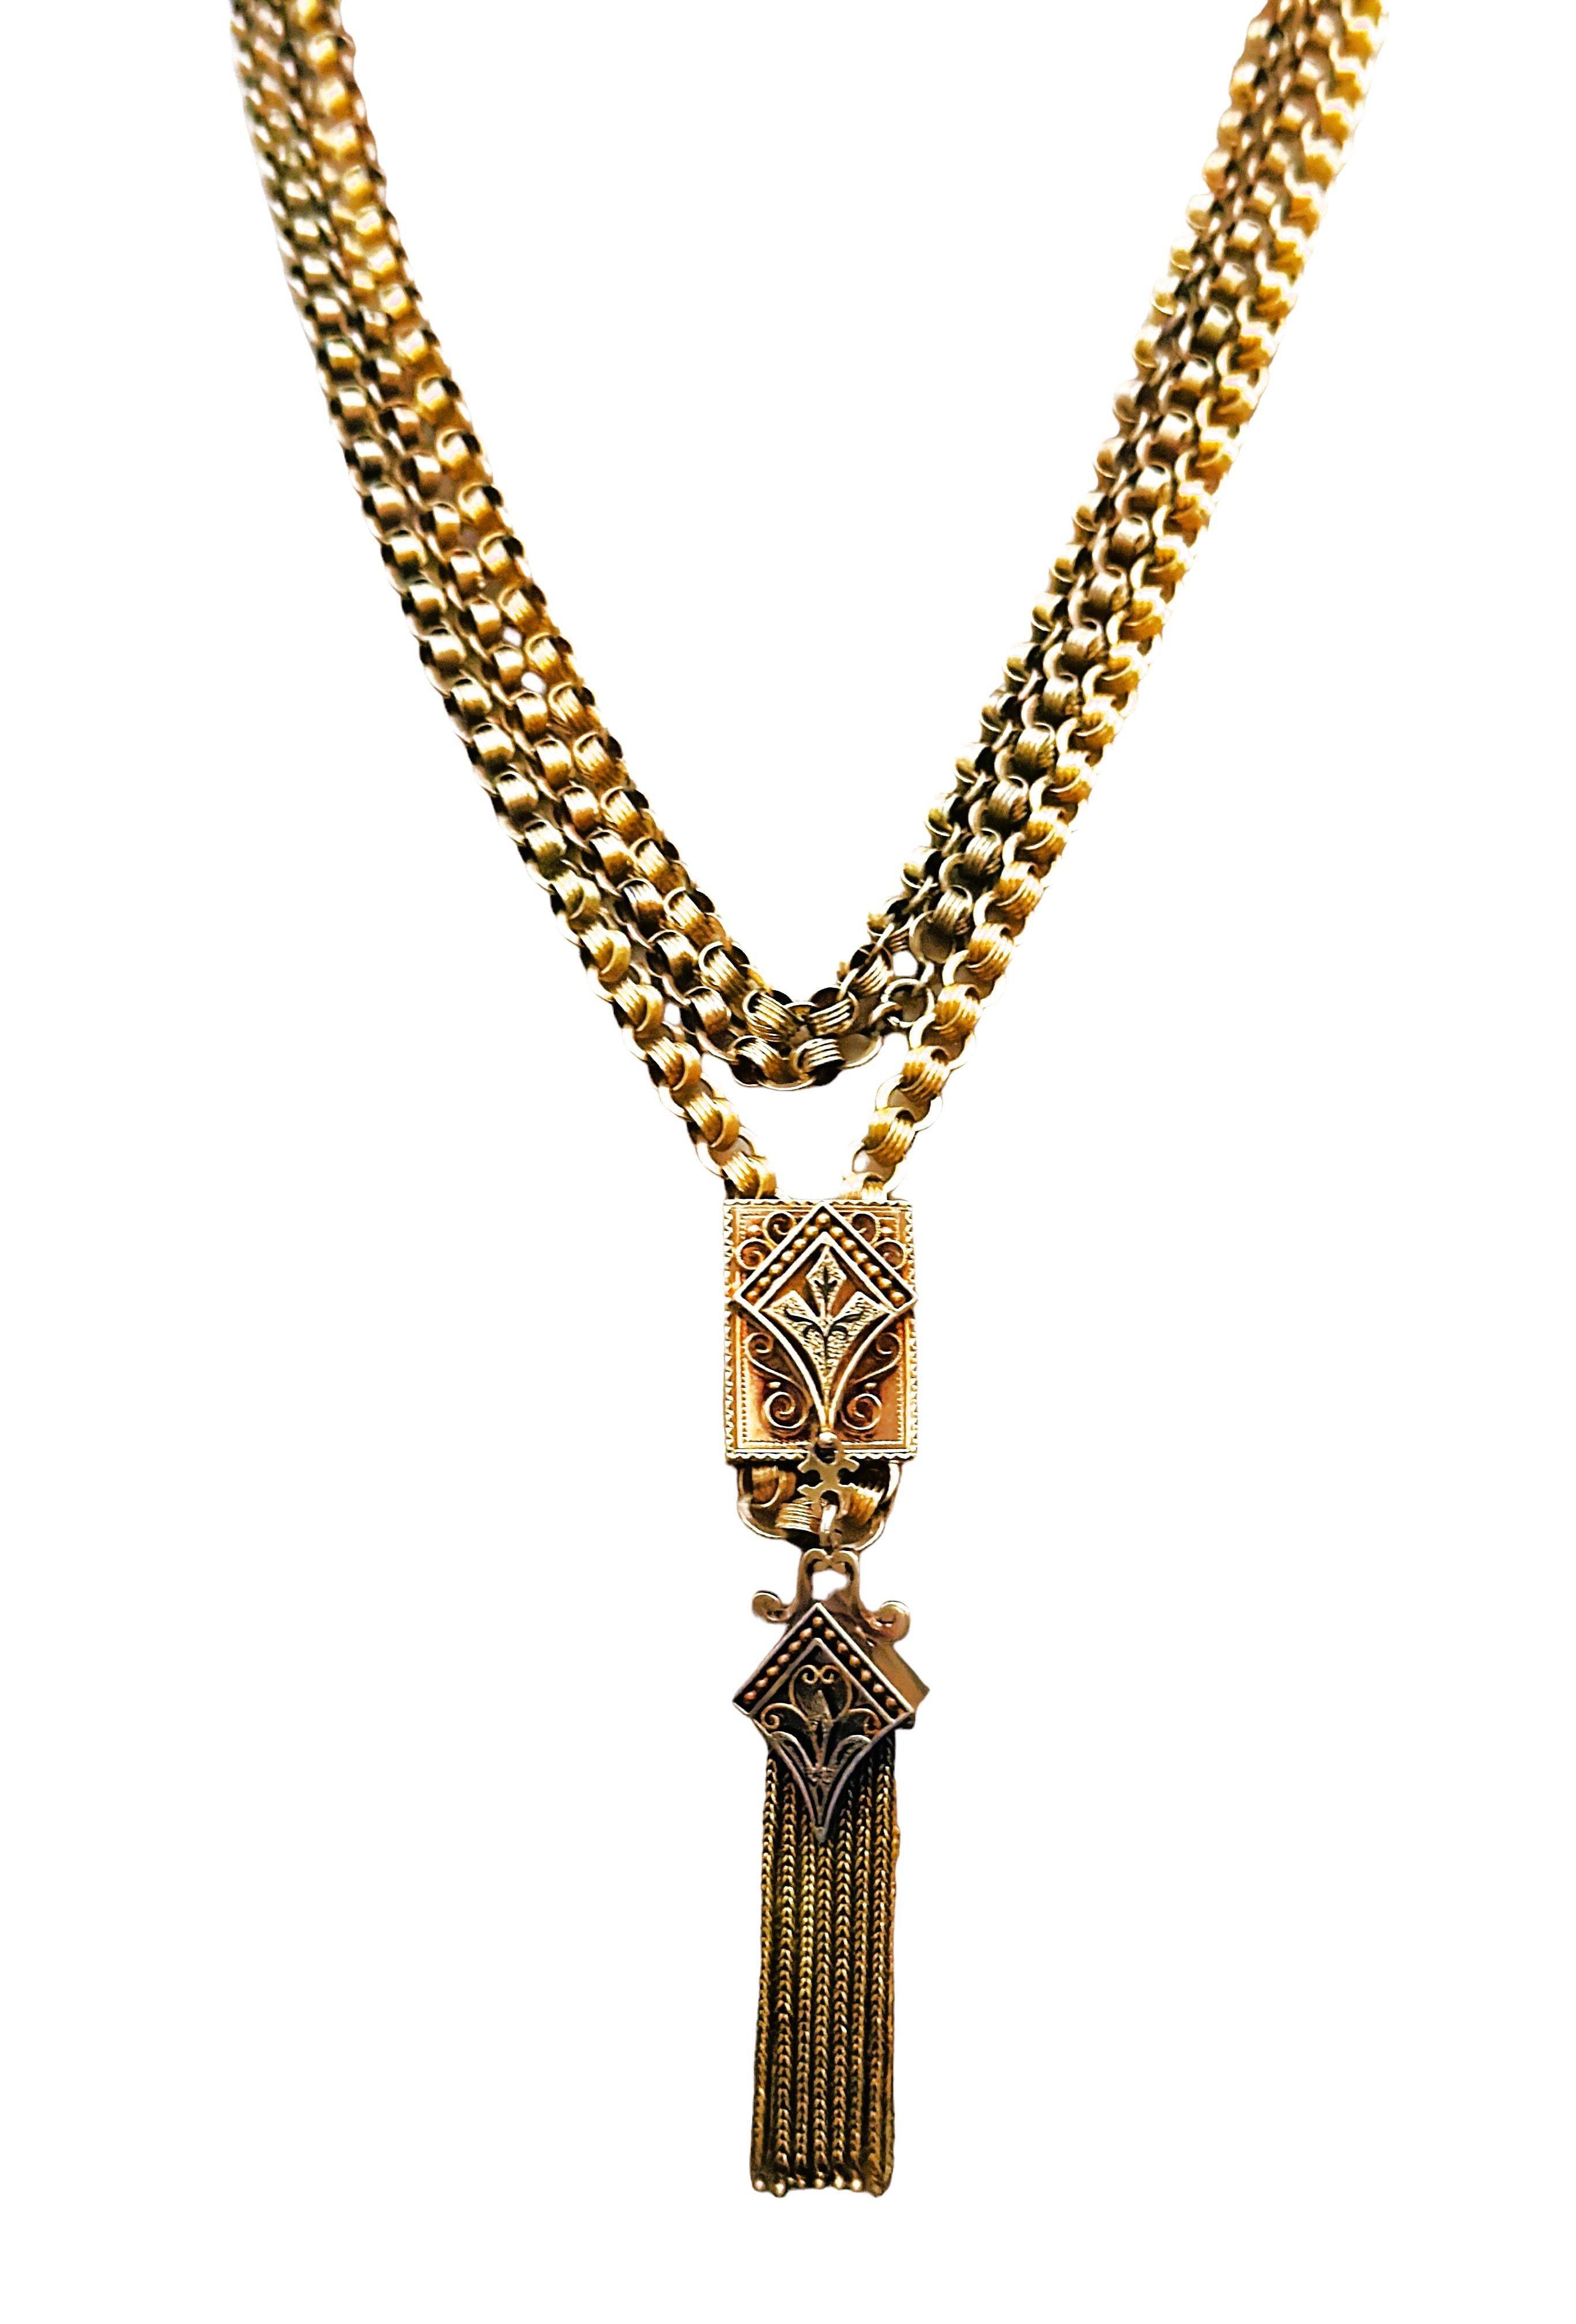 Antique Victorian 14K Gold 33 Inch Fancy Link Slide Necklace 84.54 Grams For Sale 11